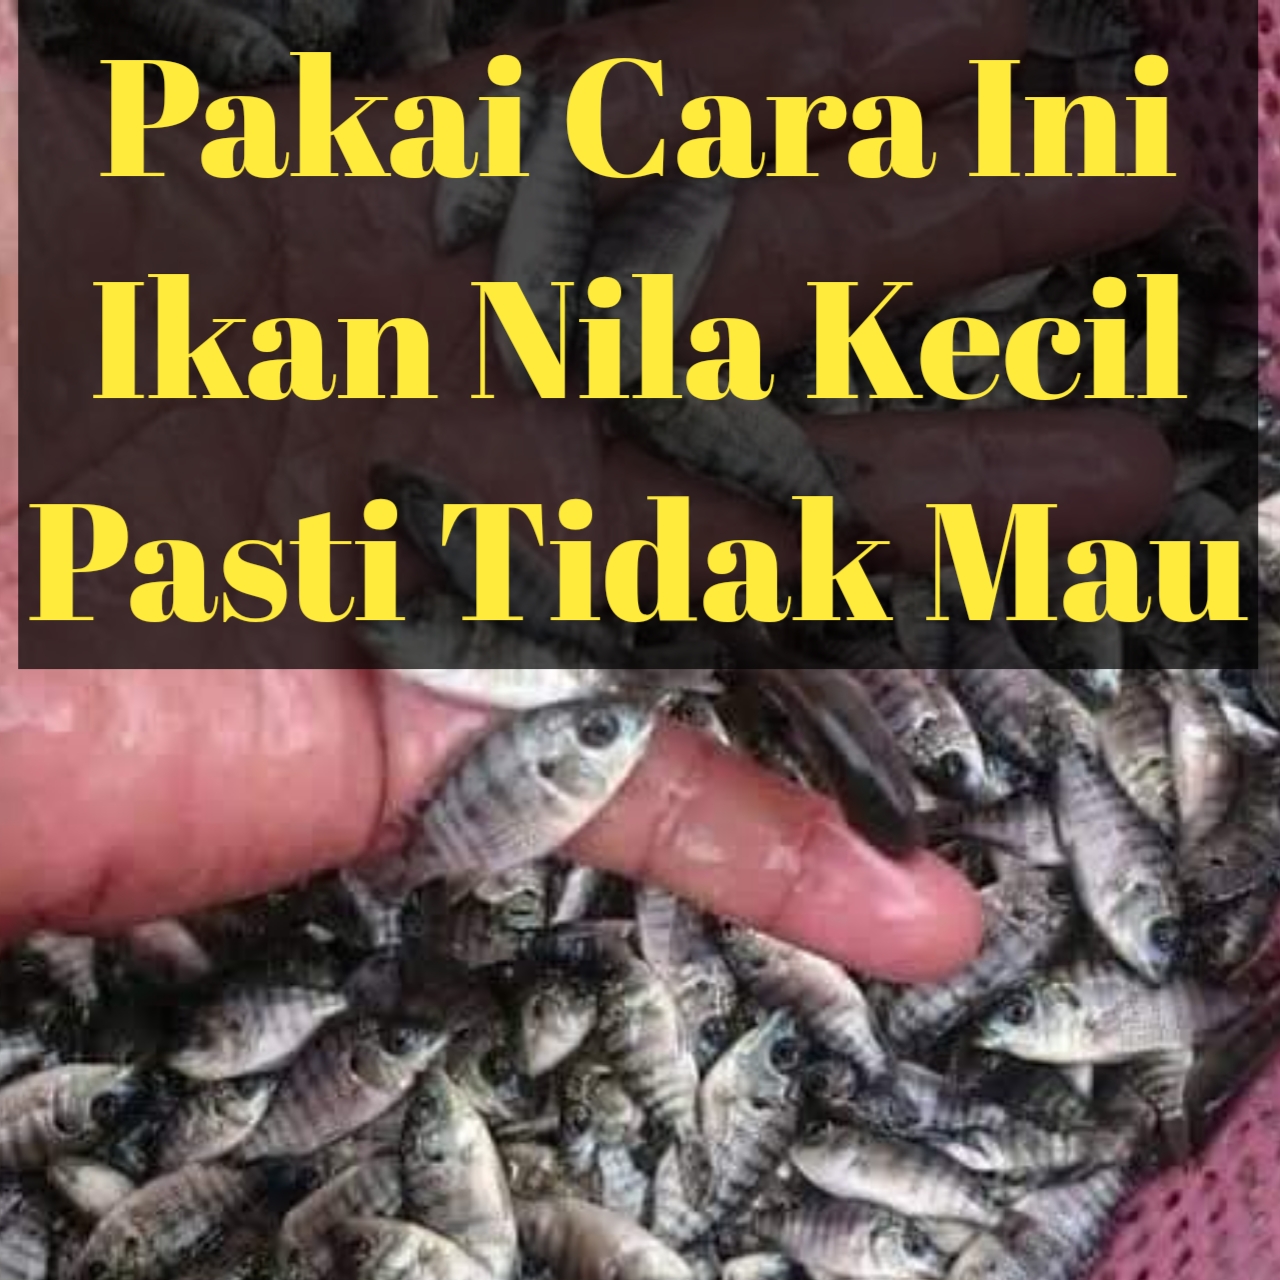 Pas mancing ikan nila dengan umpan lumut dimakan ikan kecil terus